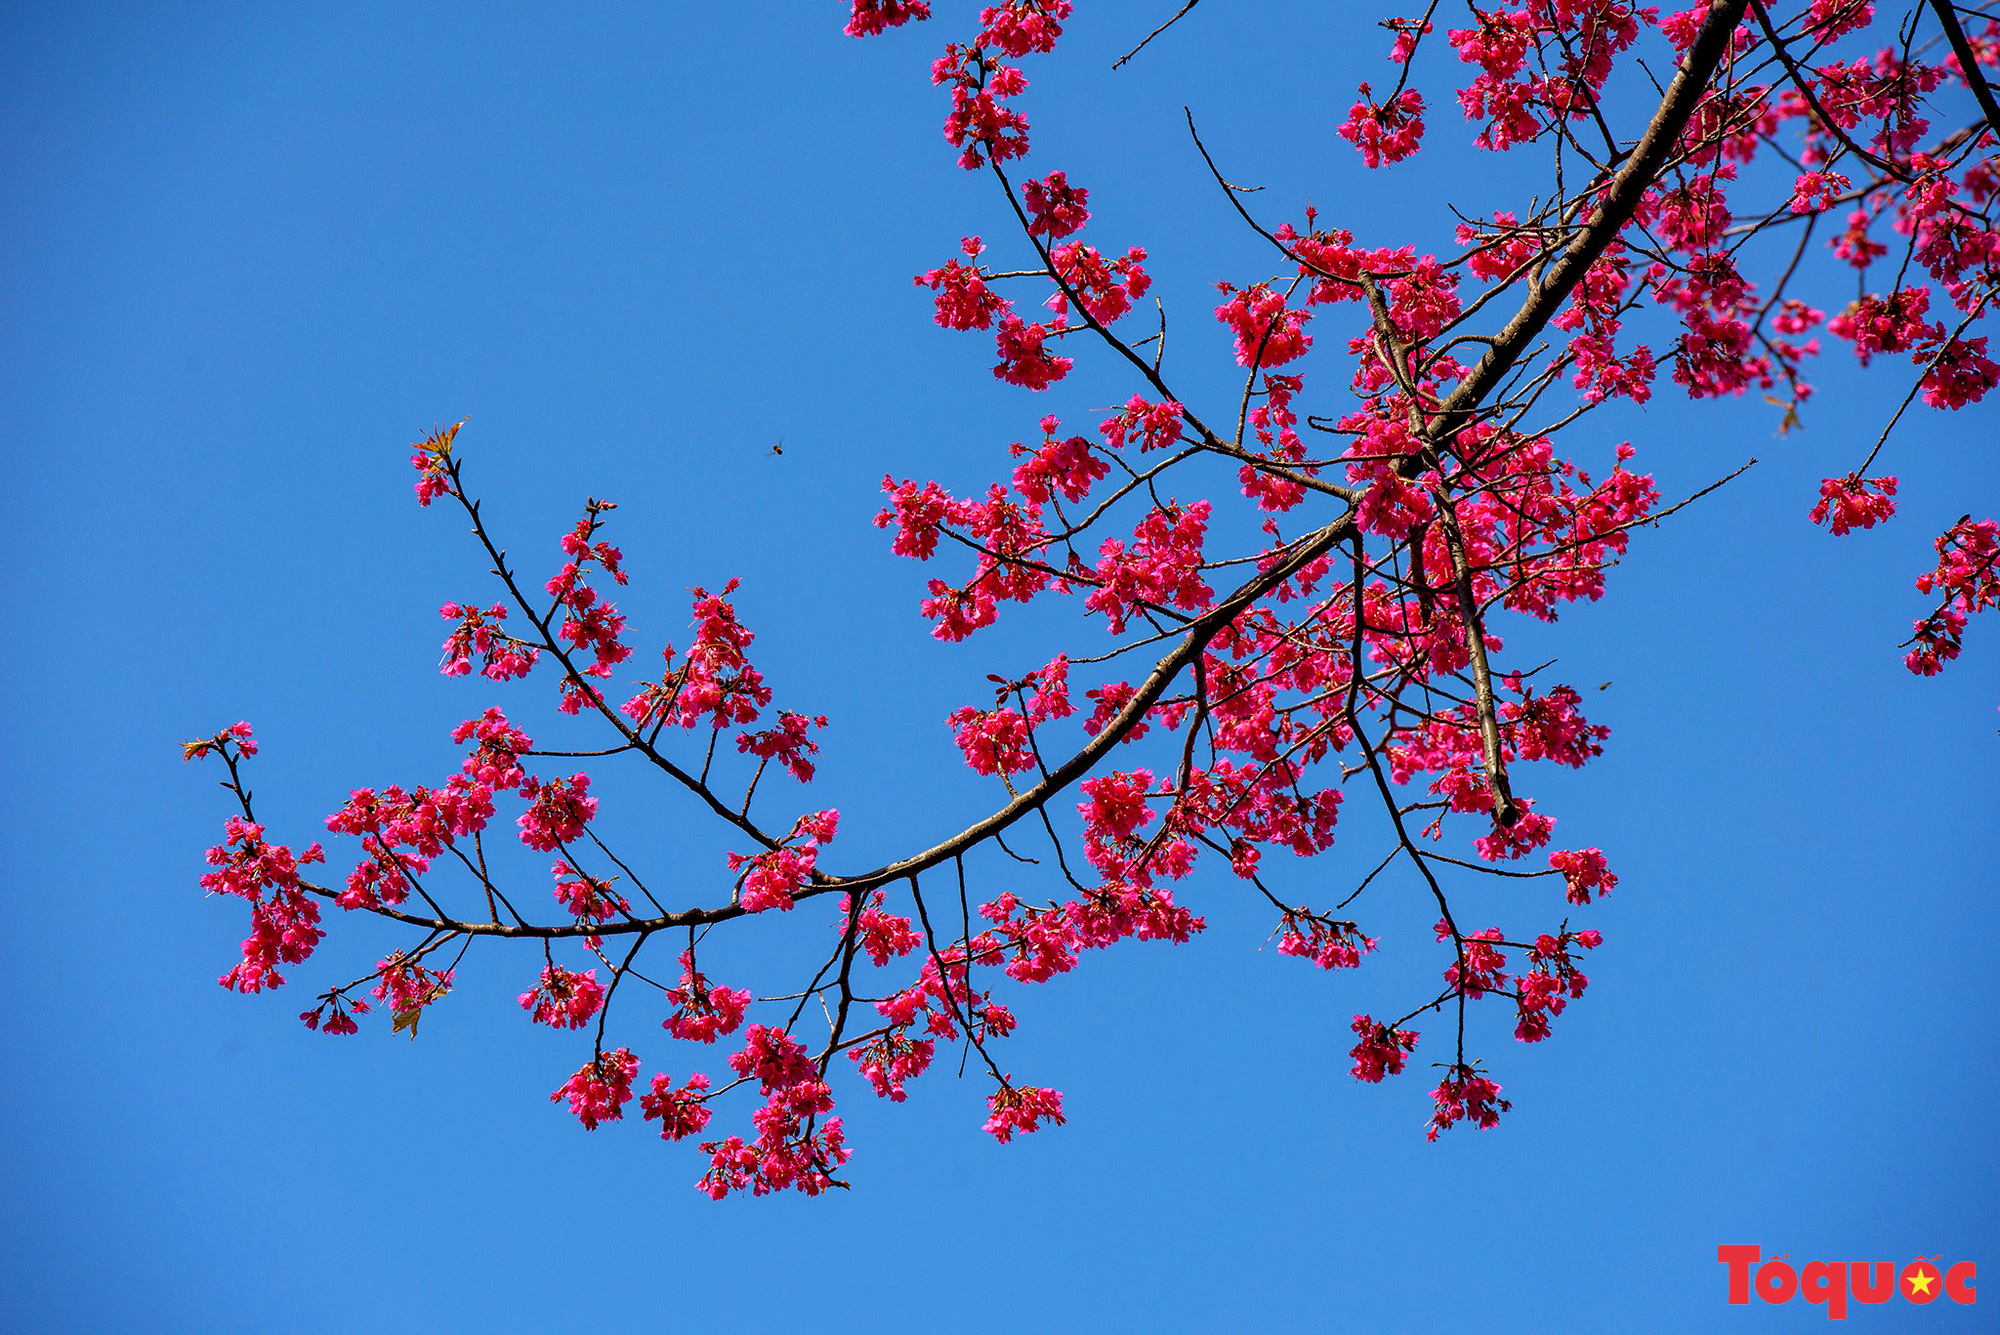 Chiêm ngưỡng loài hoa đào chuông quý hiếm trên đỉnh Mẫu Sơn - Ảnh 5.